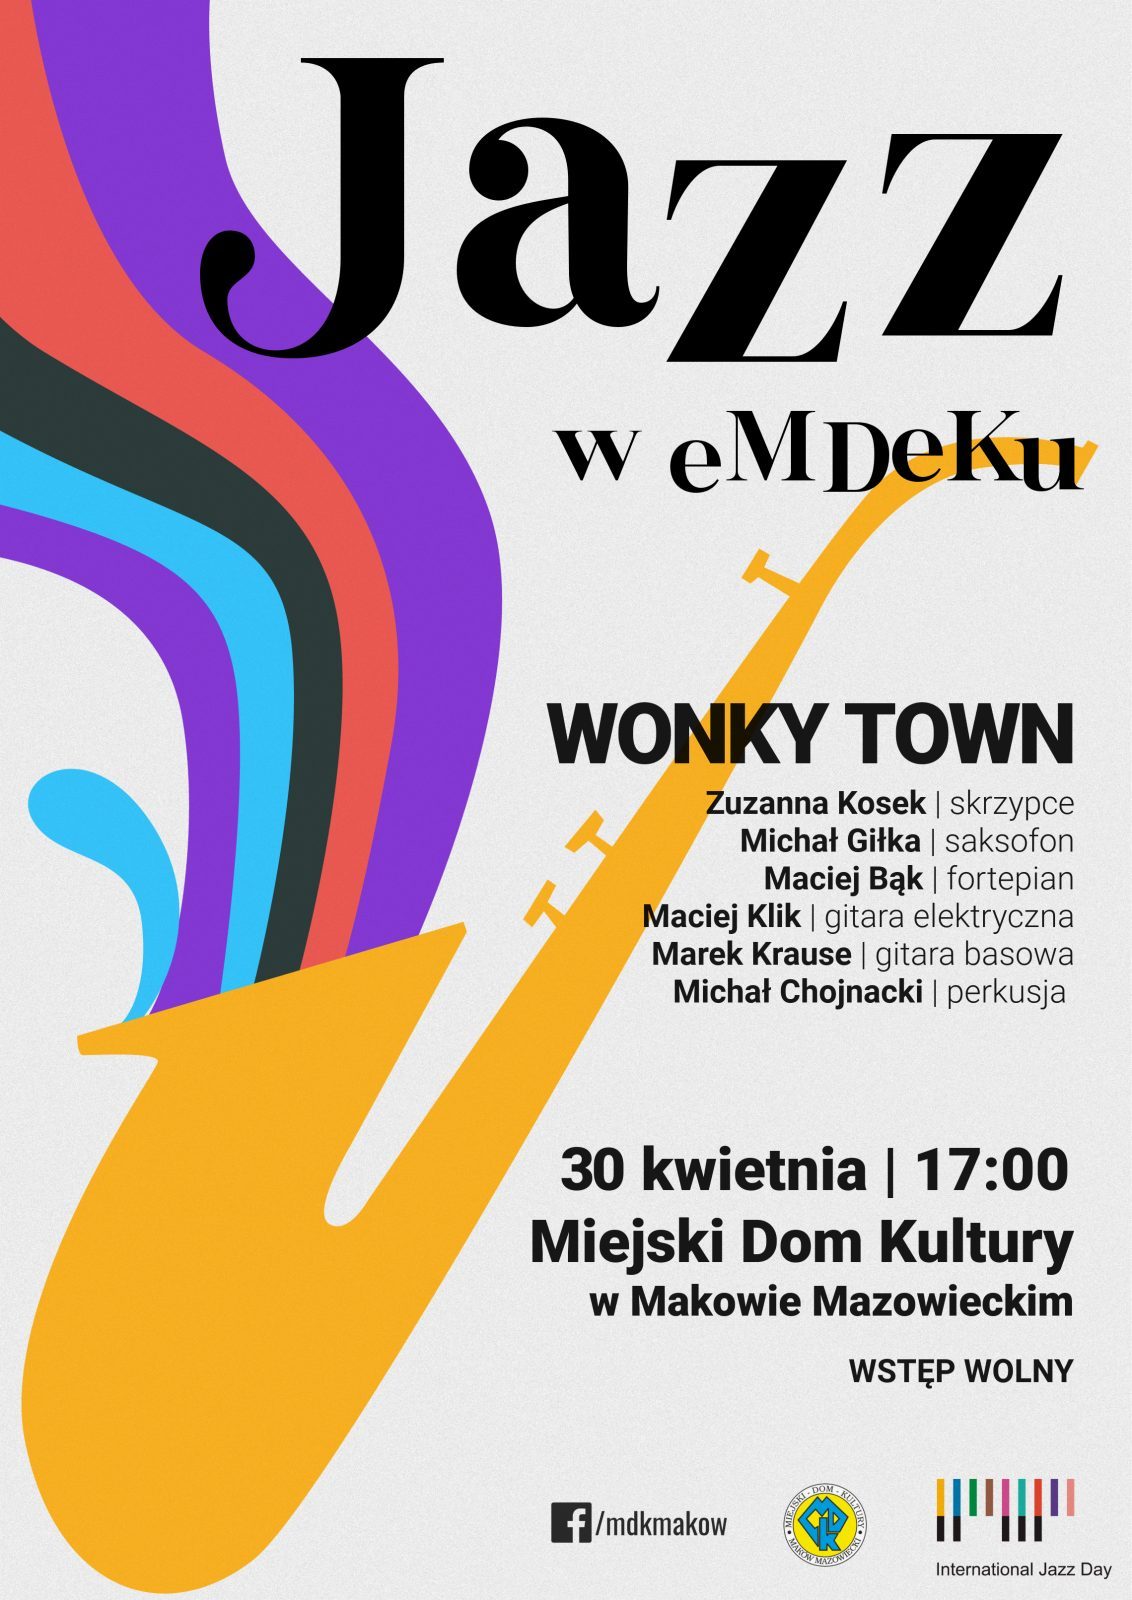 Plakat koncertu "Jazz w emdeku"